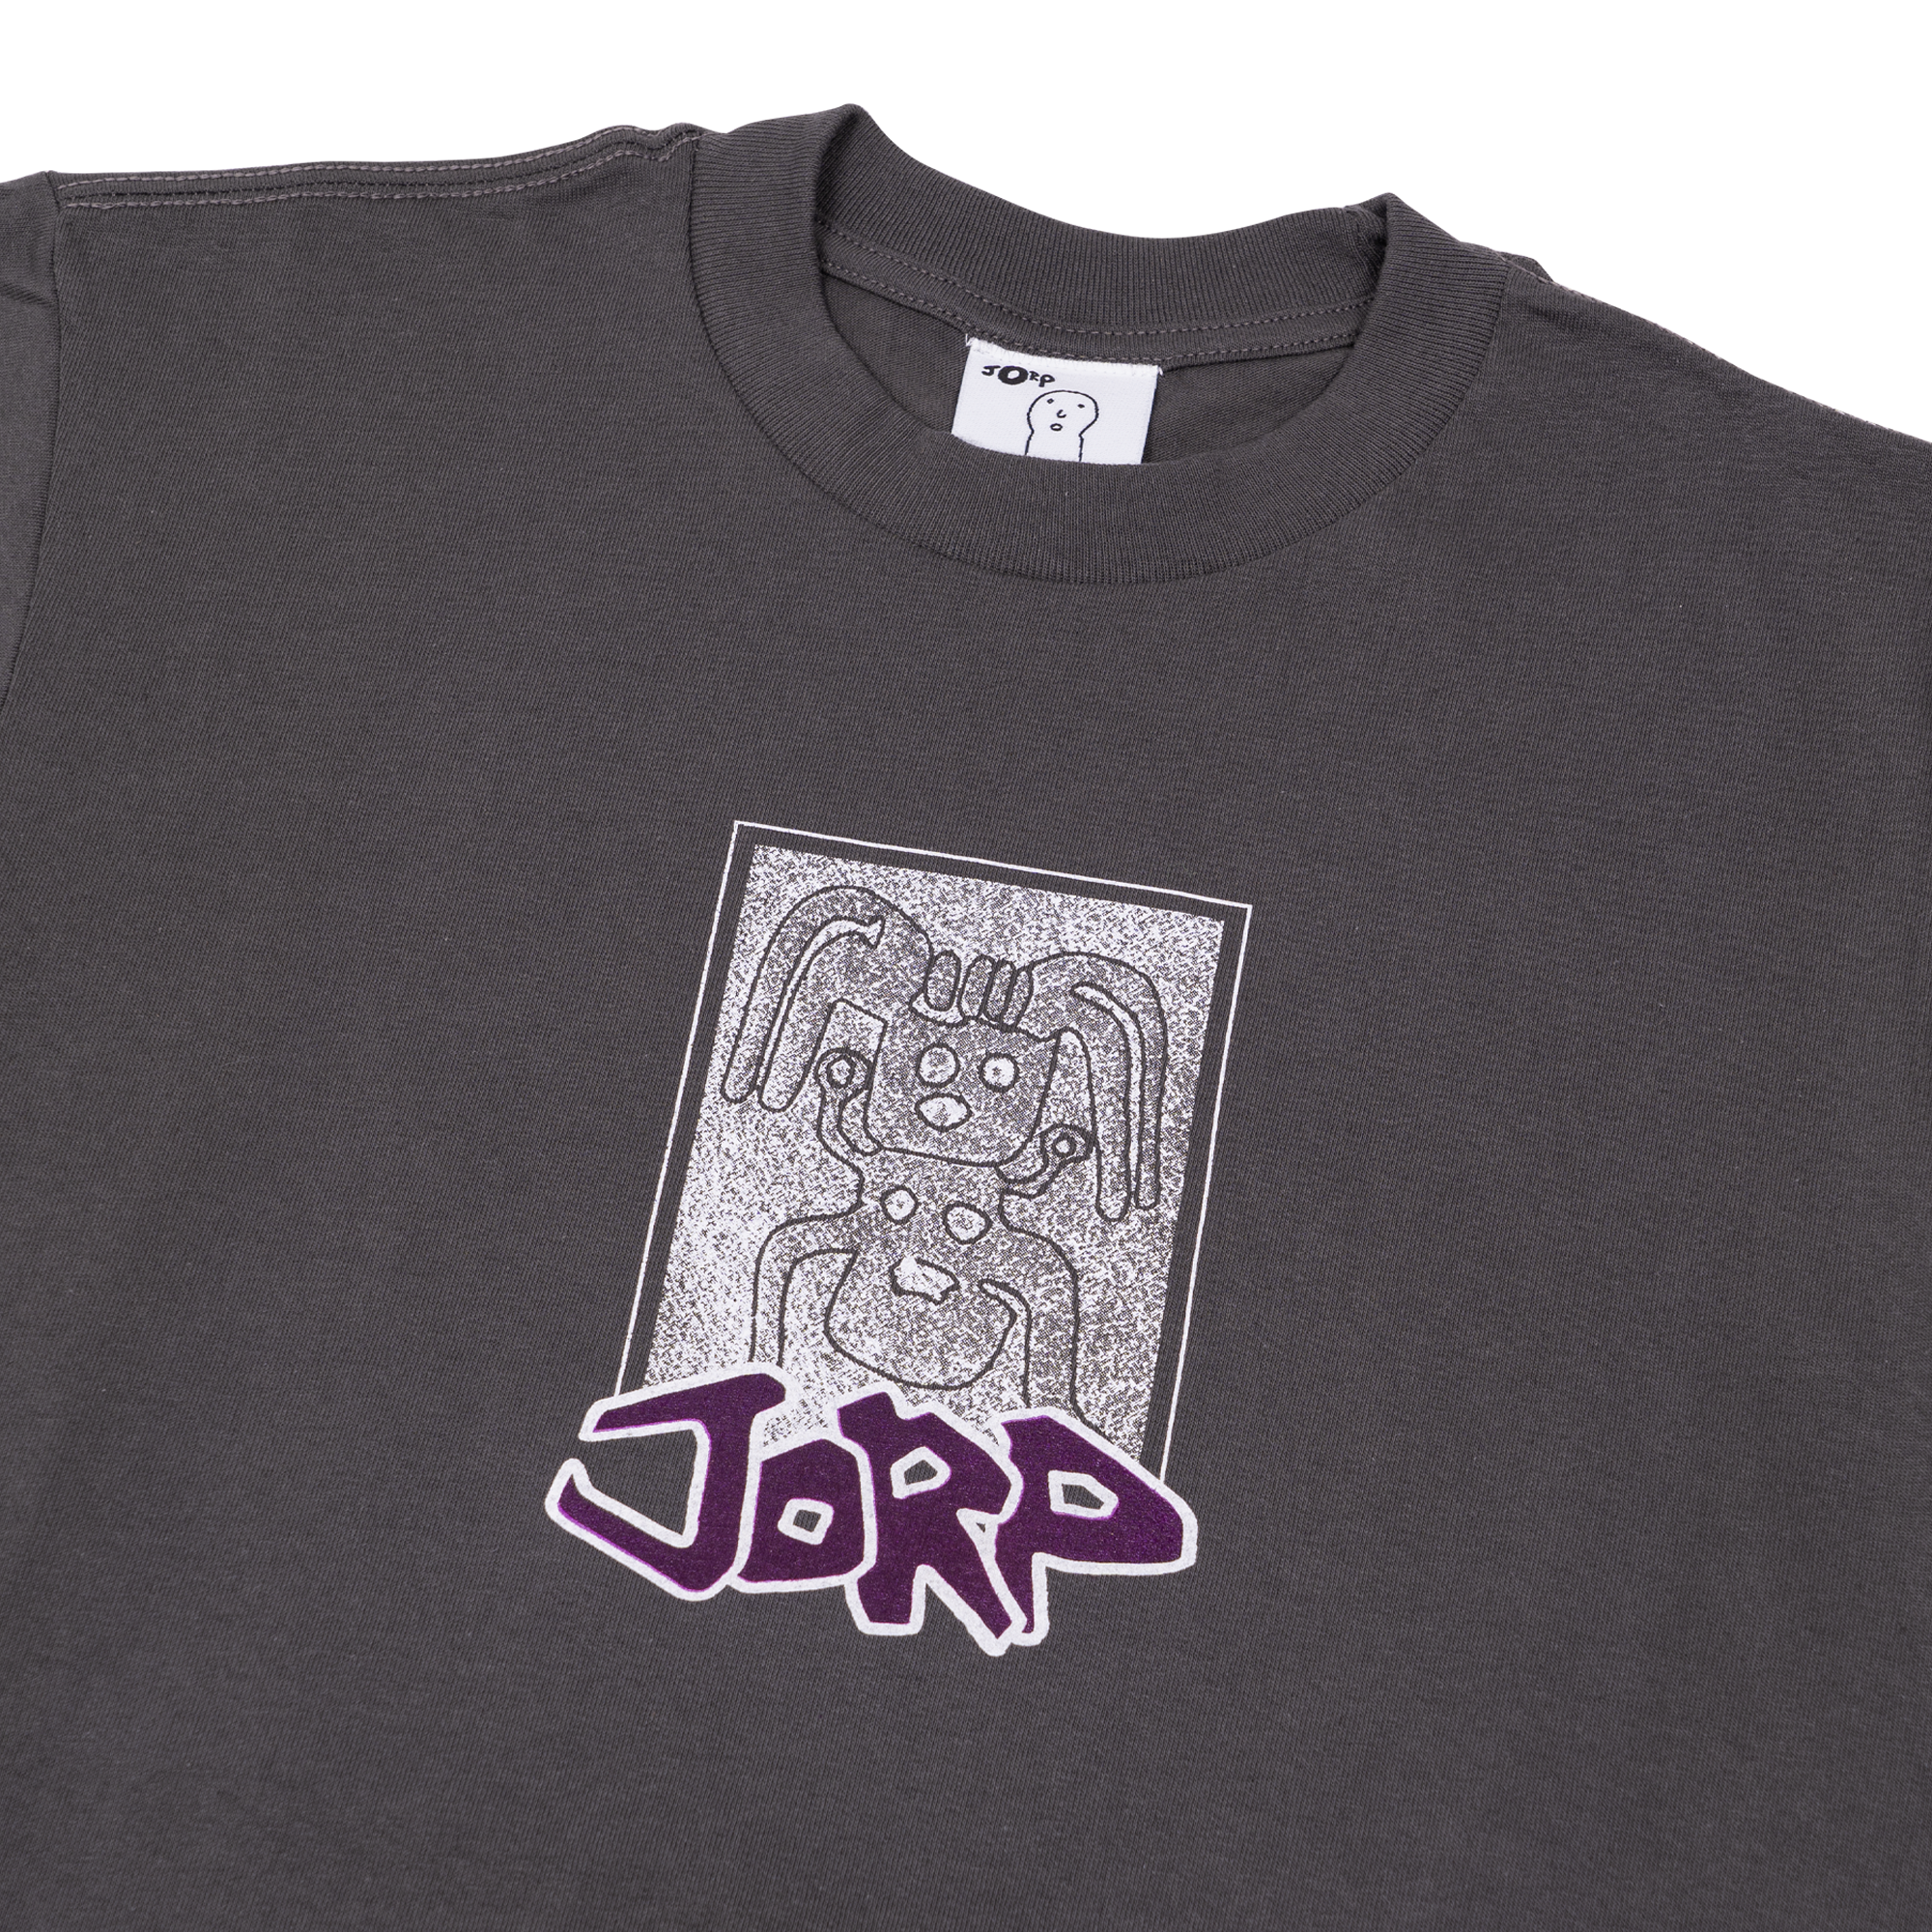 Jorp Nazca Tee - Dark Grey